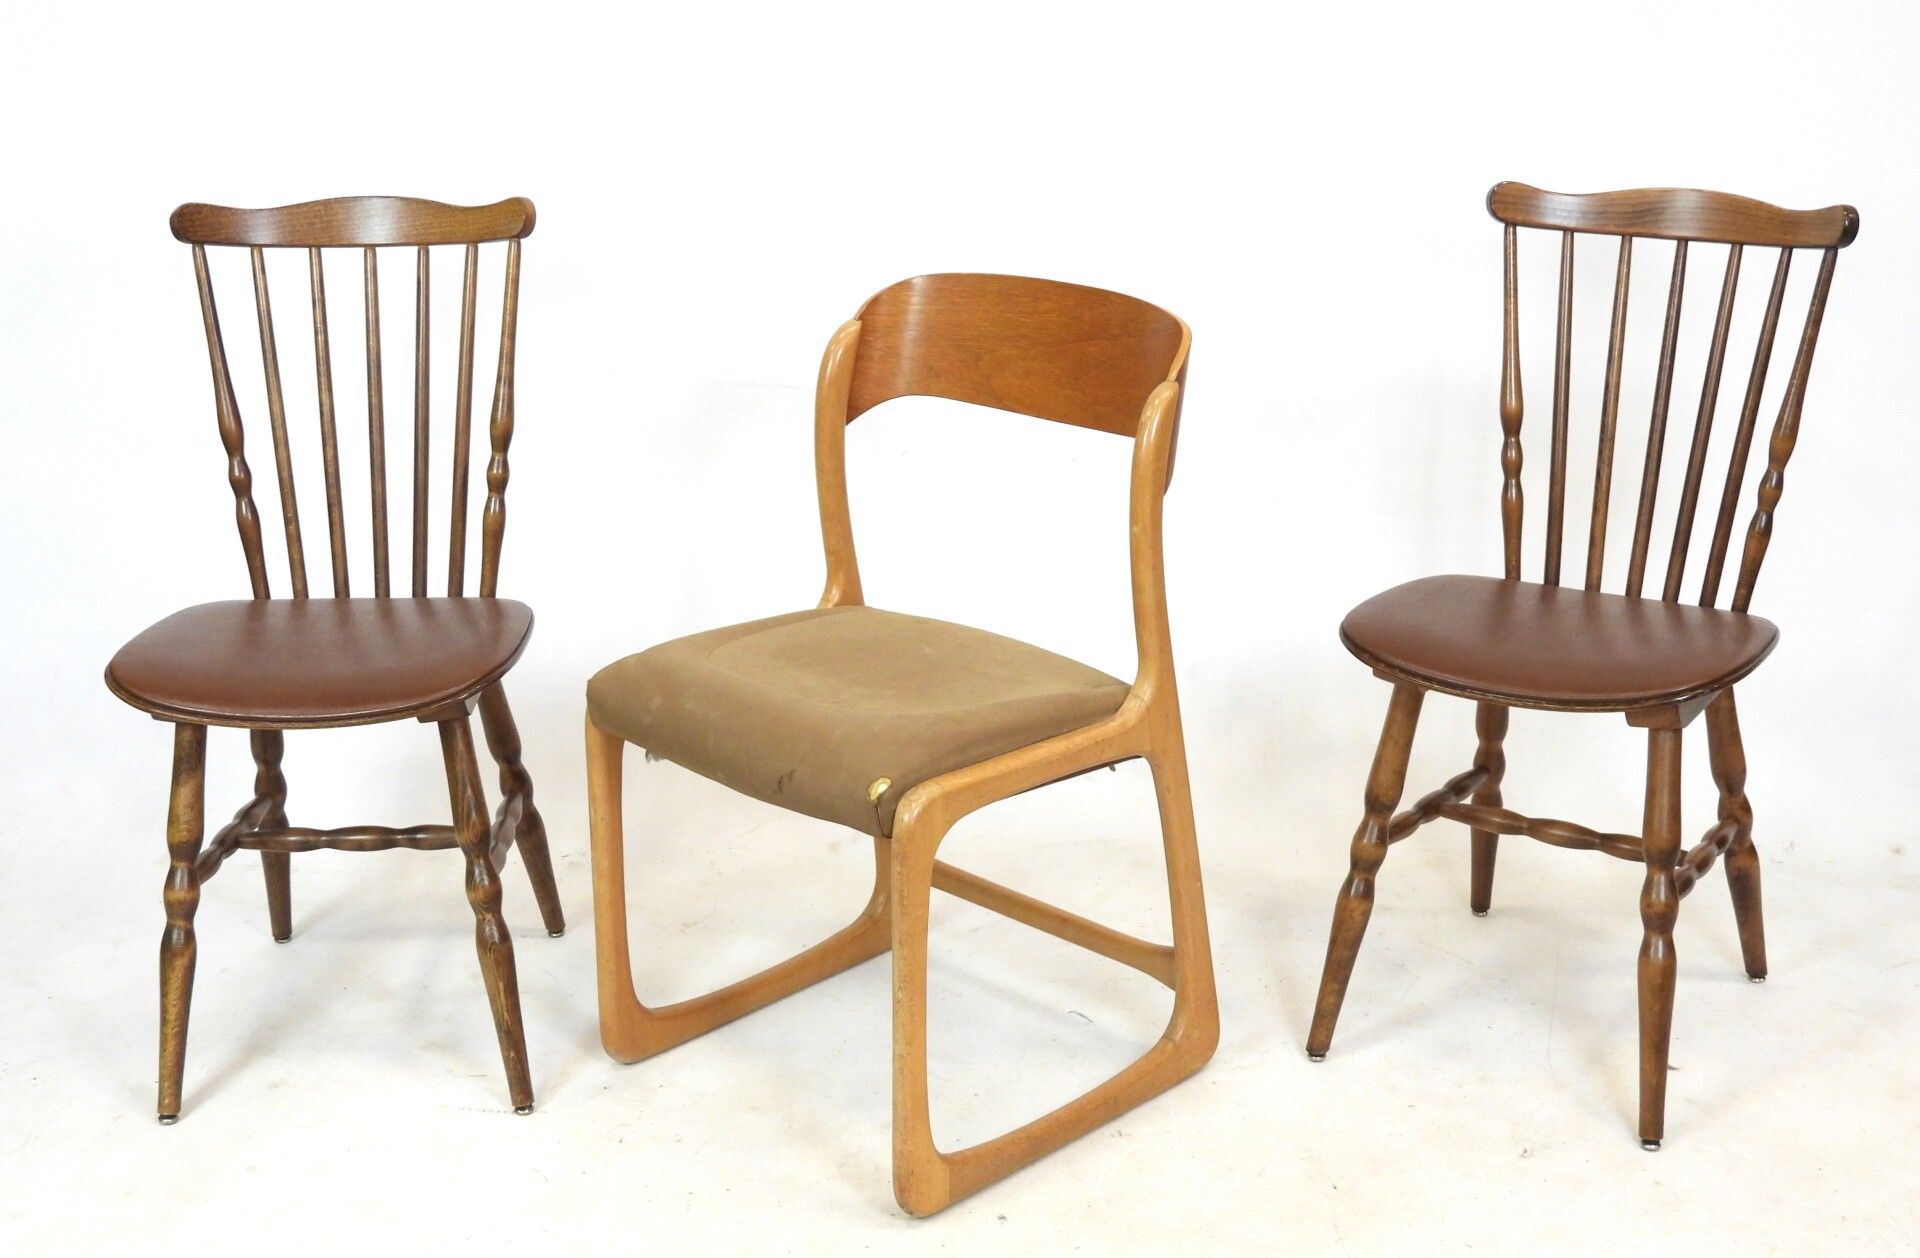 doloroso Oferta de trabajo prototipo BAUMANN: Par de sillas con barras de madera. Con un sello. Altura: 80 cm.  BAUMANN atribuye a: Silla de trineo en madera y tela marrón. Lágrimas.  Altura: 80 cm.